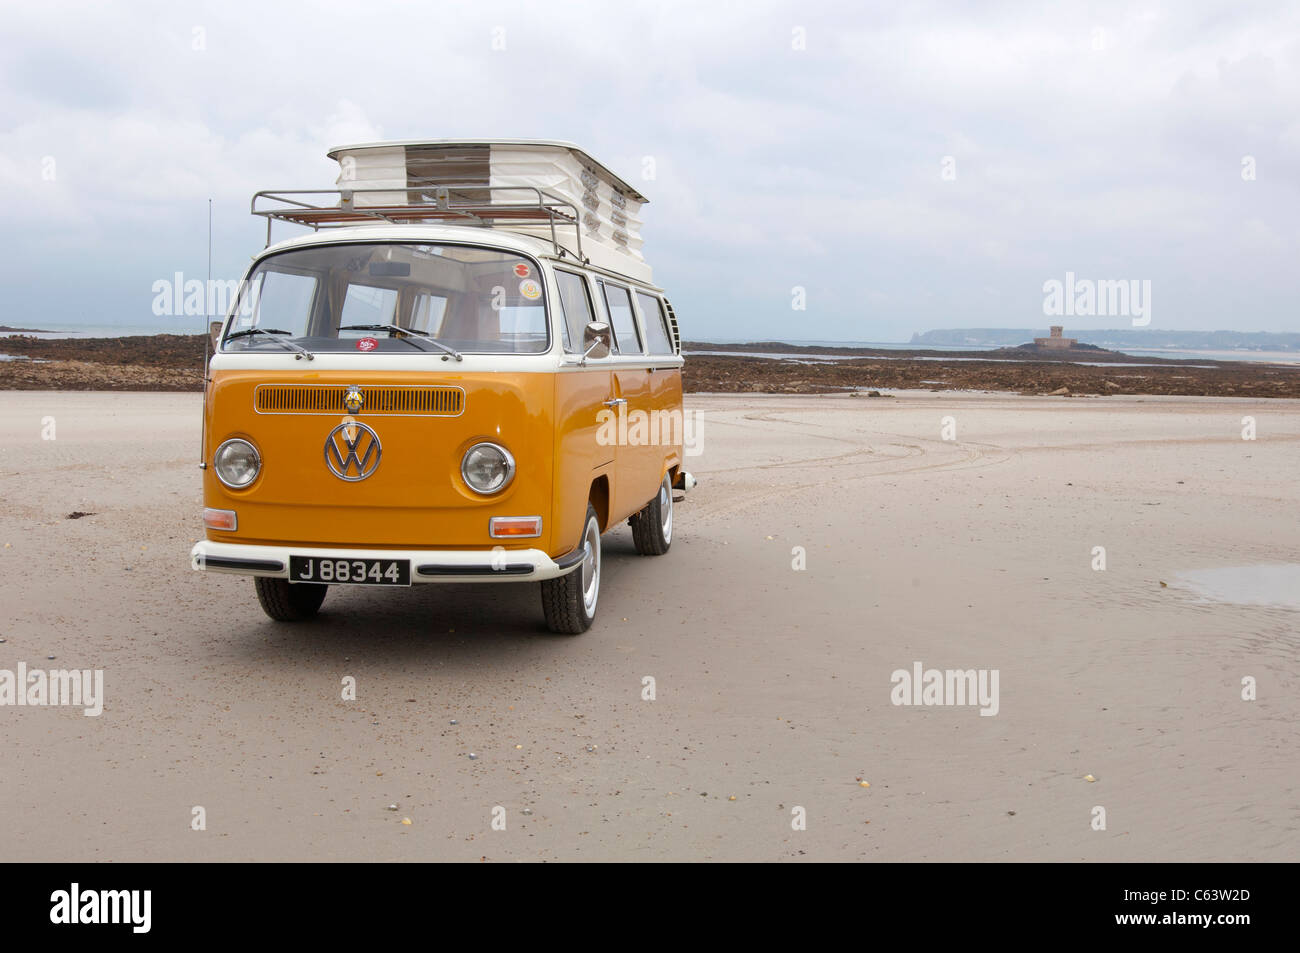 VW Volkswagen Erker Devon Camper van klassische Luft gekühlt hinteren  engined van Stockfotografie - Alamy